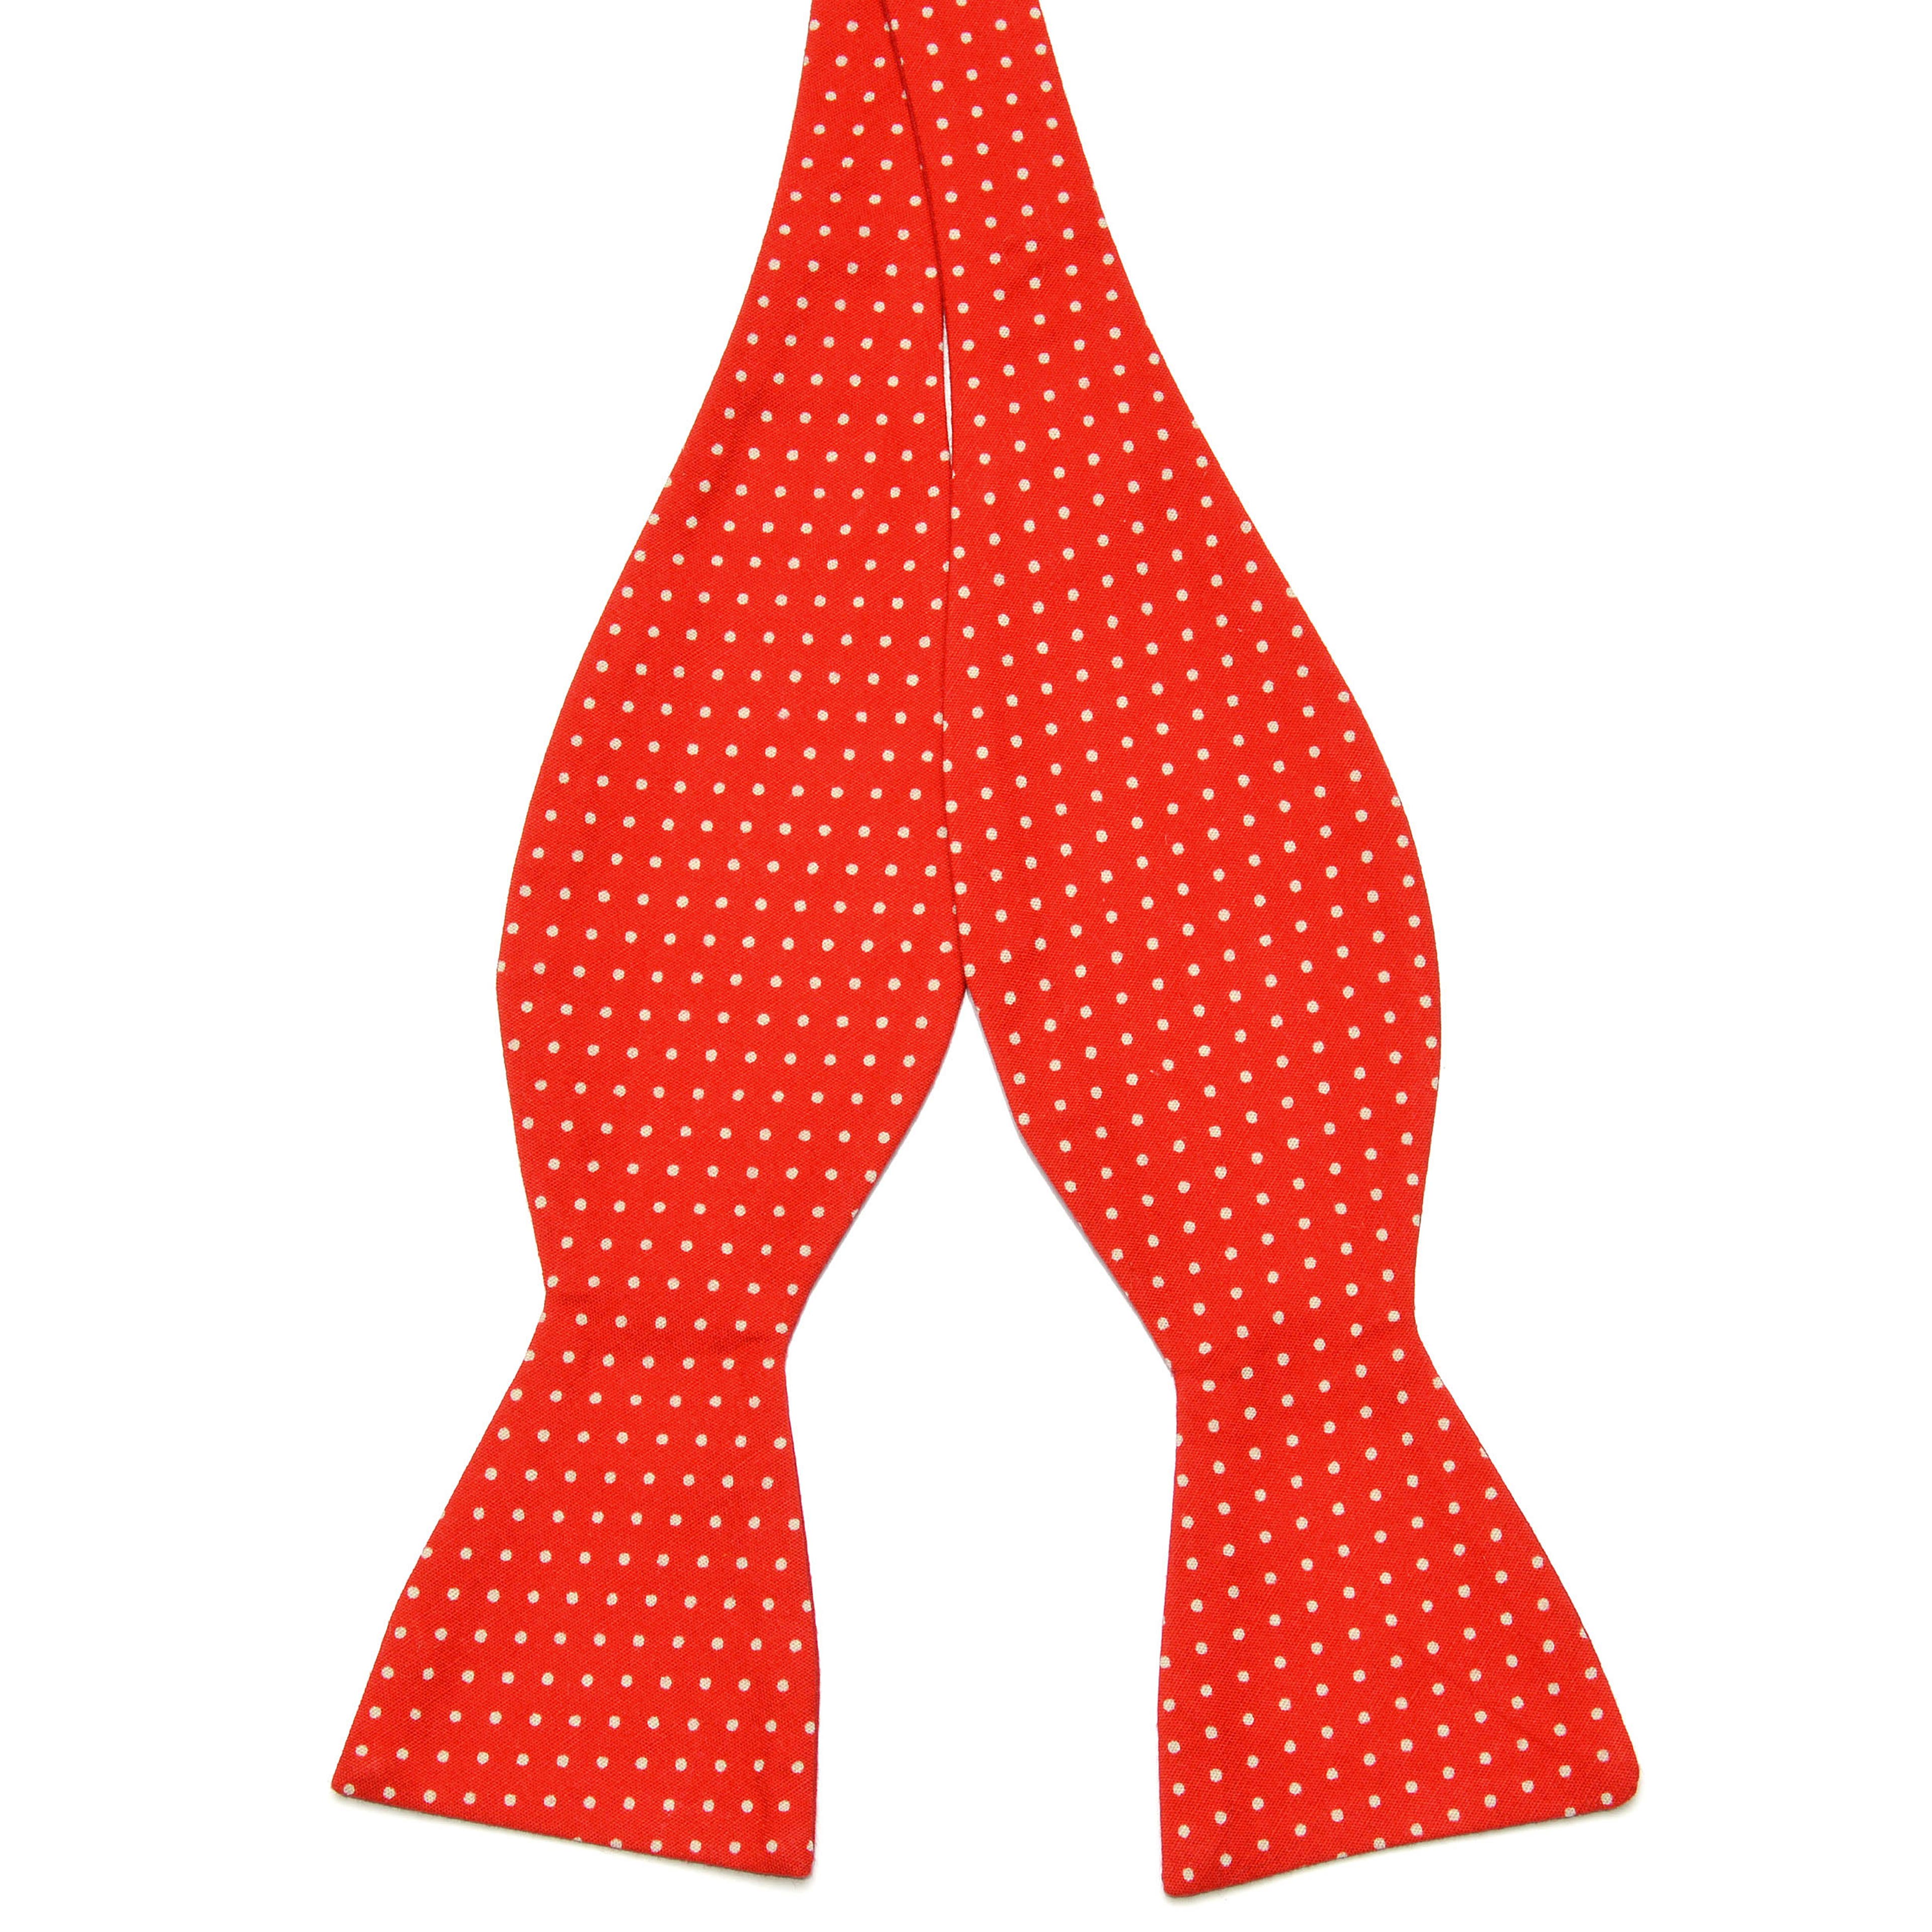 Papion self-tie din bumbac roșu cu puncte albe